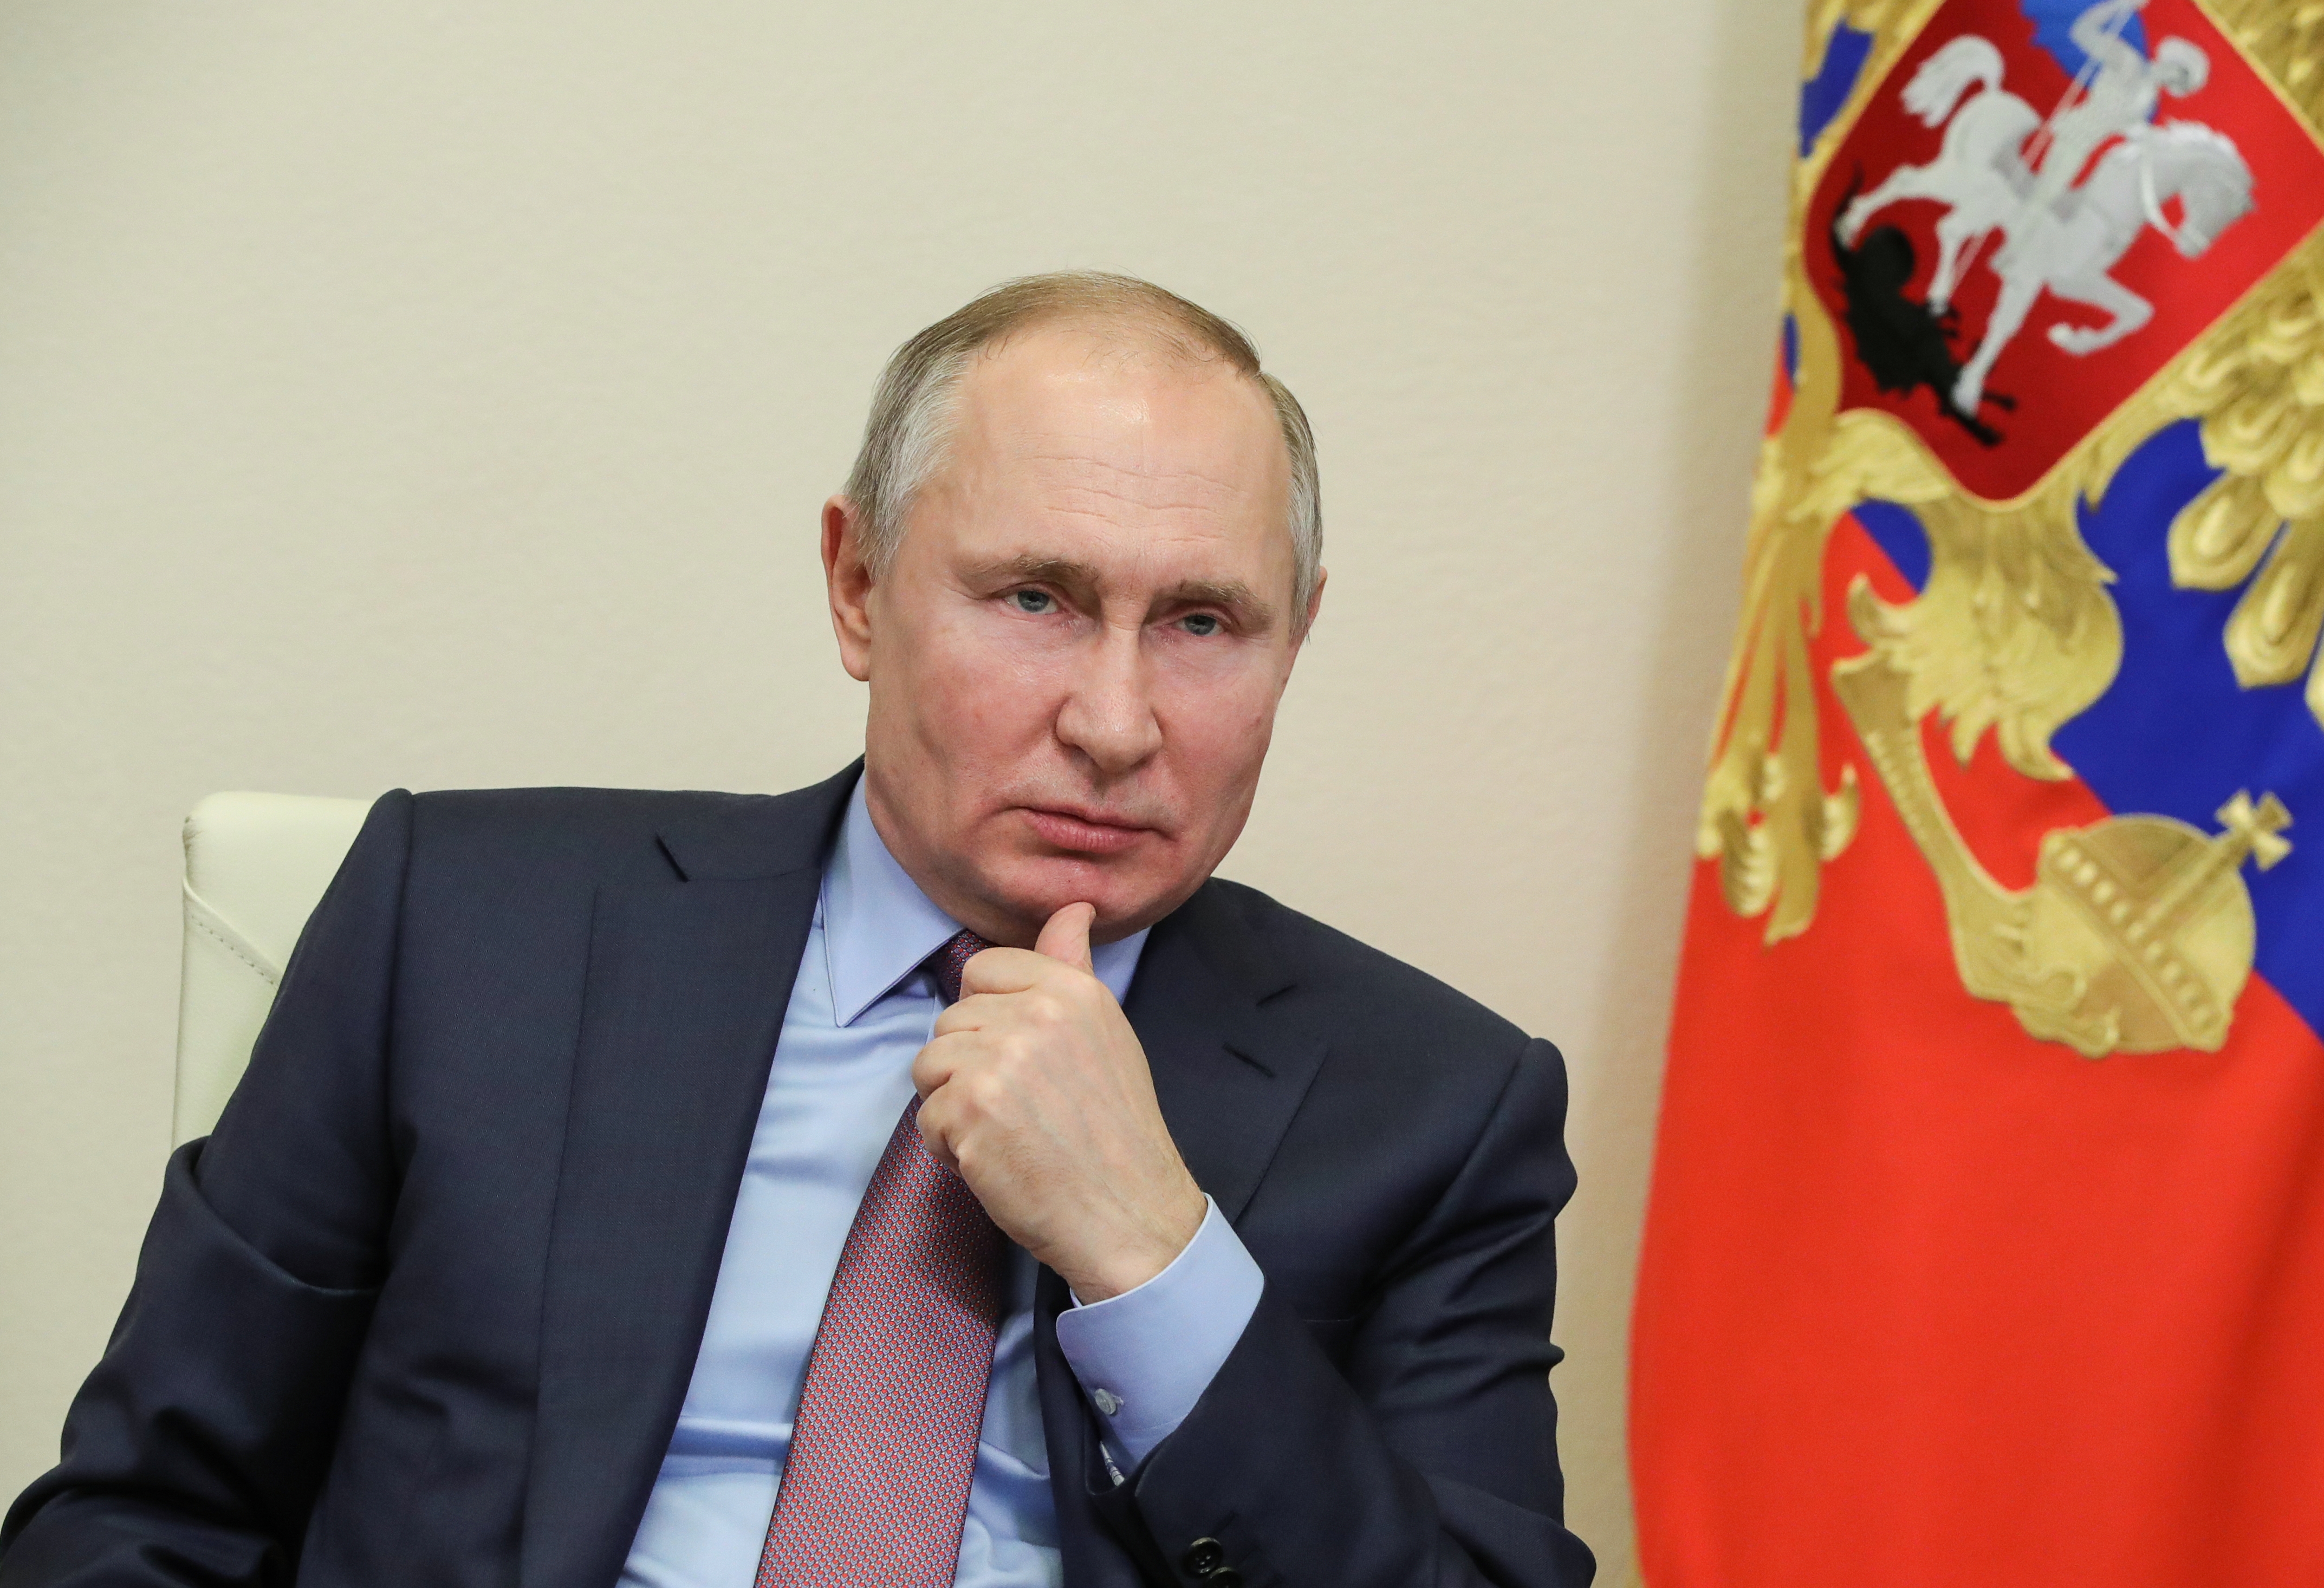 Putyin dühös, és tovább durvulhat – figyelmeztetnek az amerikai hírszerzés vezetői